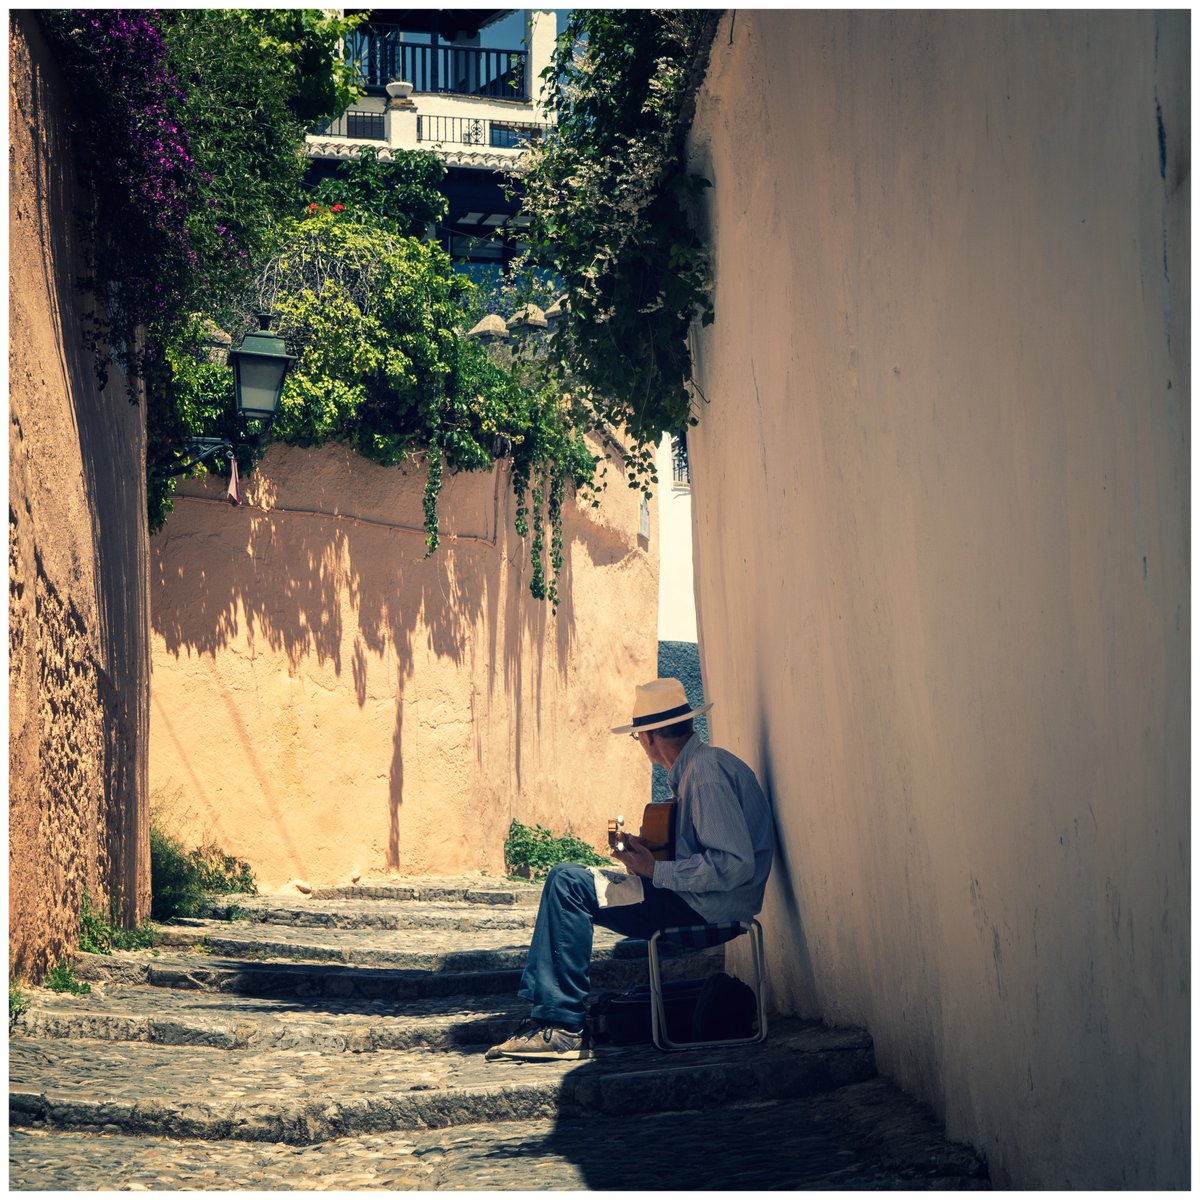 Los callejones que suenan a guitarra #mismomentosgranadinos #Granada #encasa

#streetphotography #travelphotography #worldphotography #music #musician #spanishguitar #guitarplayer #Albaicín #Albayzin #narrowstreets #orange #shadow #sony #sonyrx100vii #unescoworldheritage